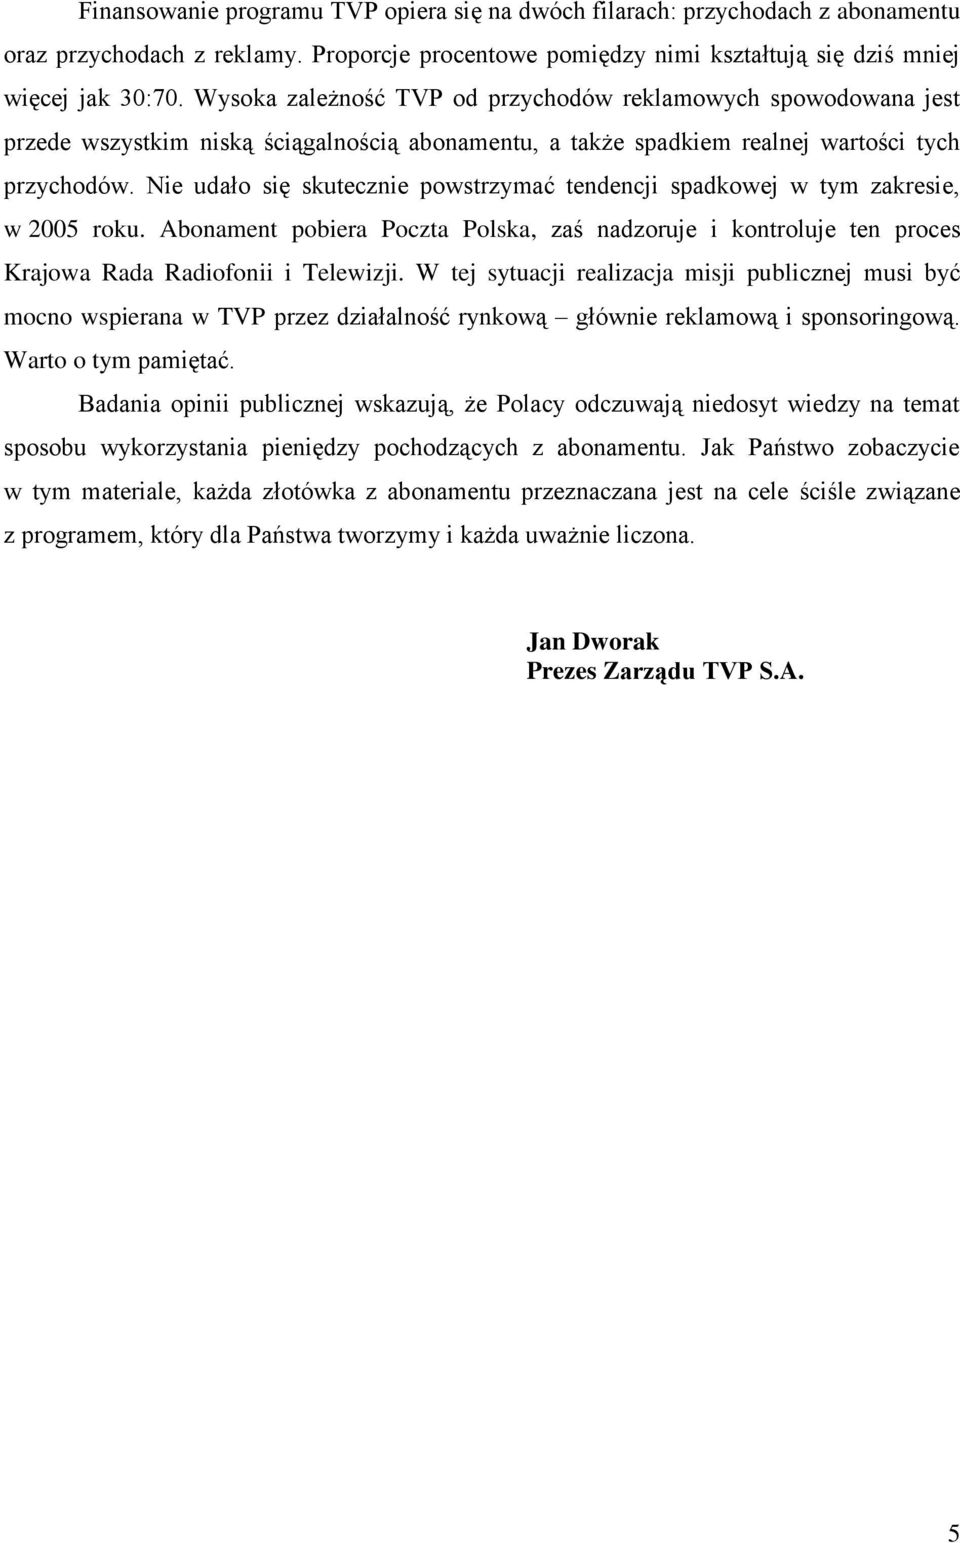 Nie udało się skutecznie powstrzymać tendencji spadkowej w tym zakresie, w 2005 roku. Abonament pobiera Poczta Polska, zaś nadzoruje i kontroluje ten proces Krajowa Rada Radiofonii i Telewizji.